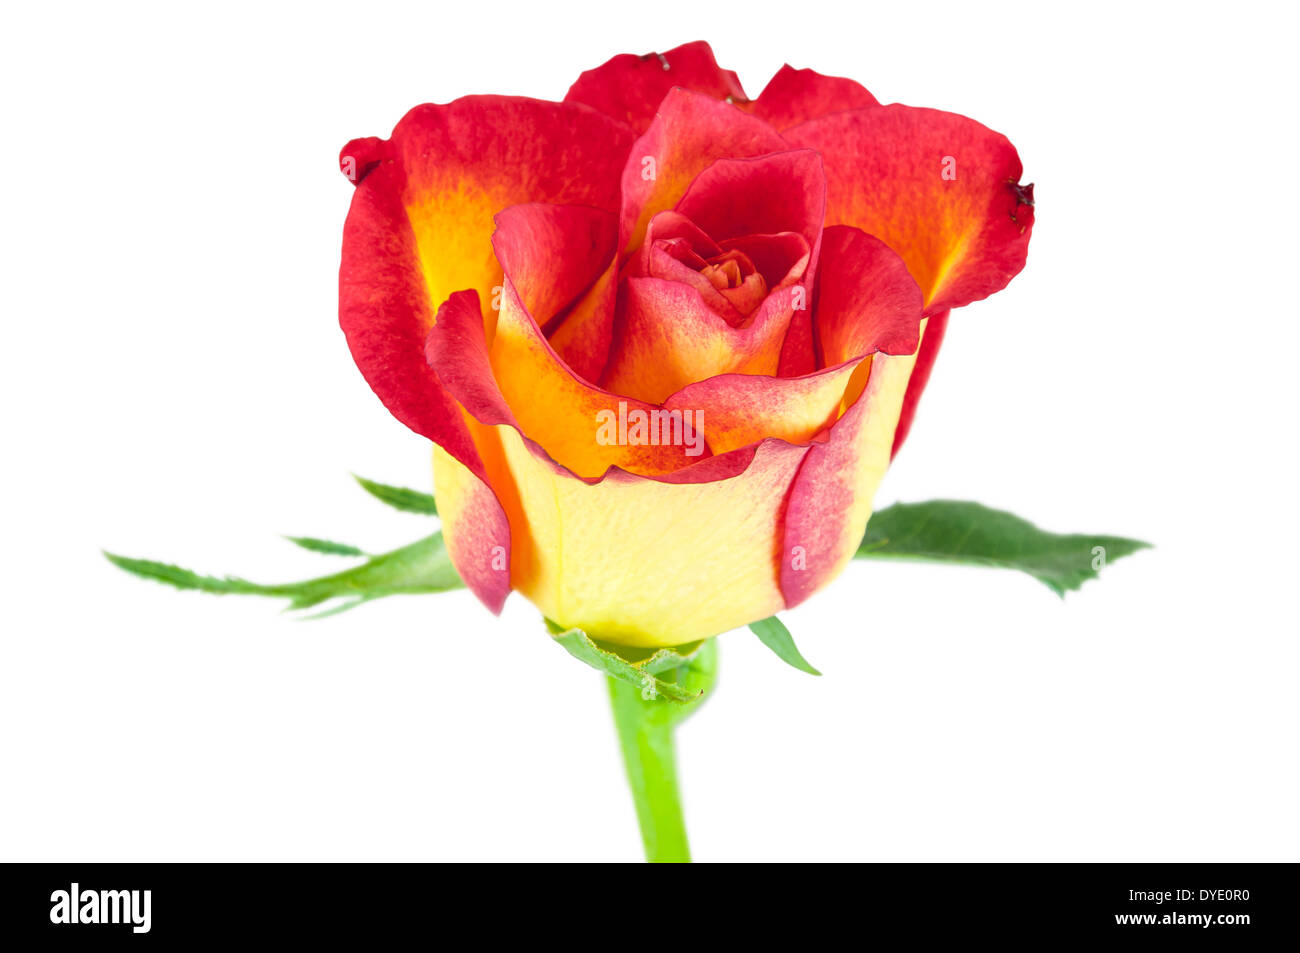 Nahaufnahme von roten gelbe rose Blume isoliert auf weißem Hintergrund mit Beschneidungspfad Stockfoto